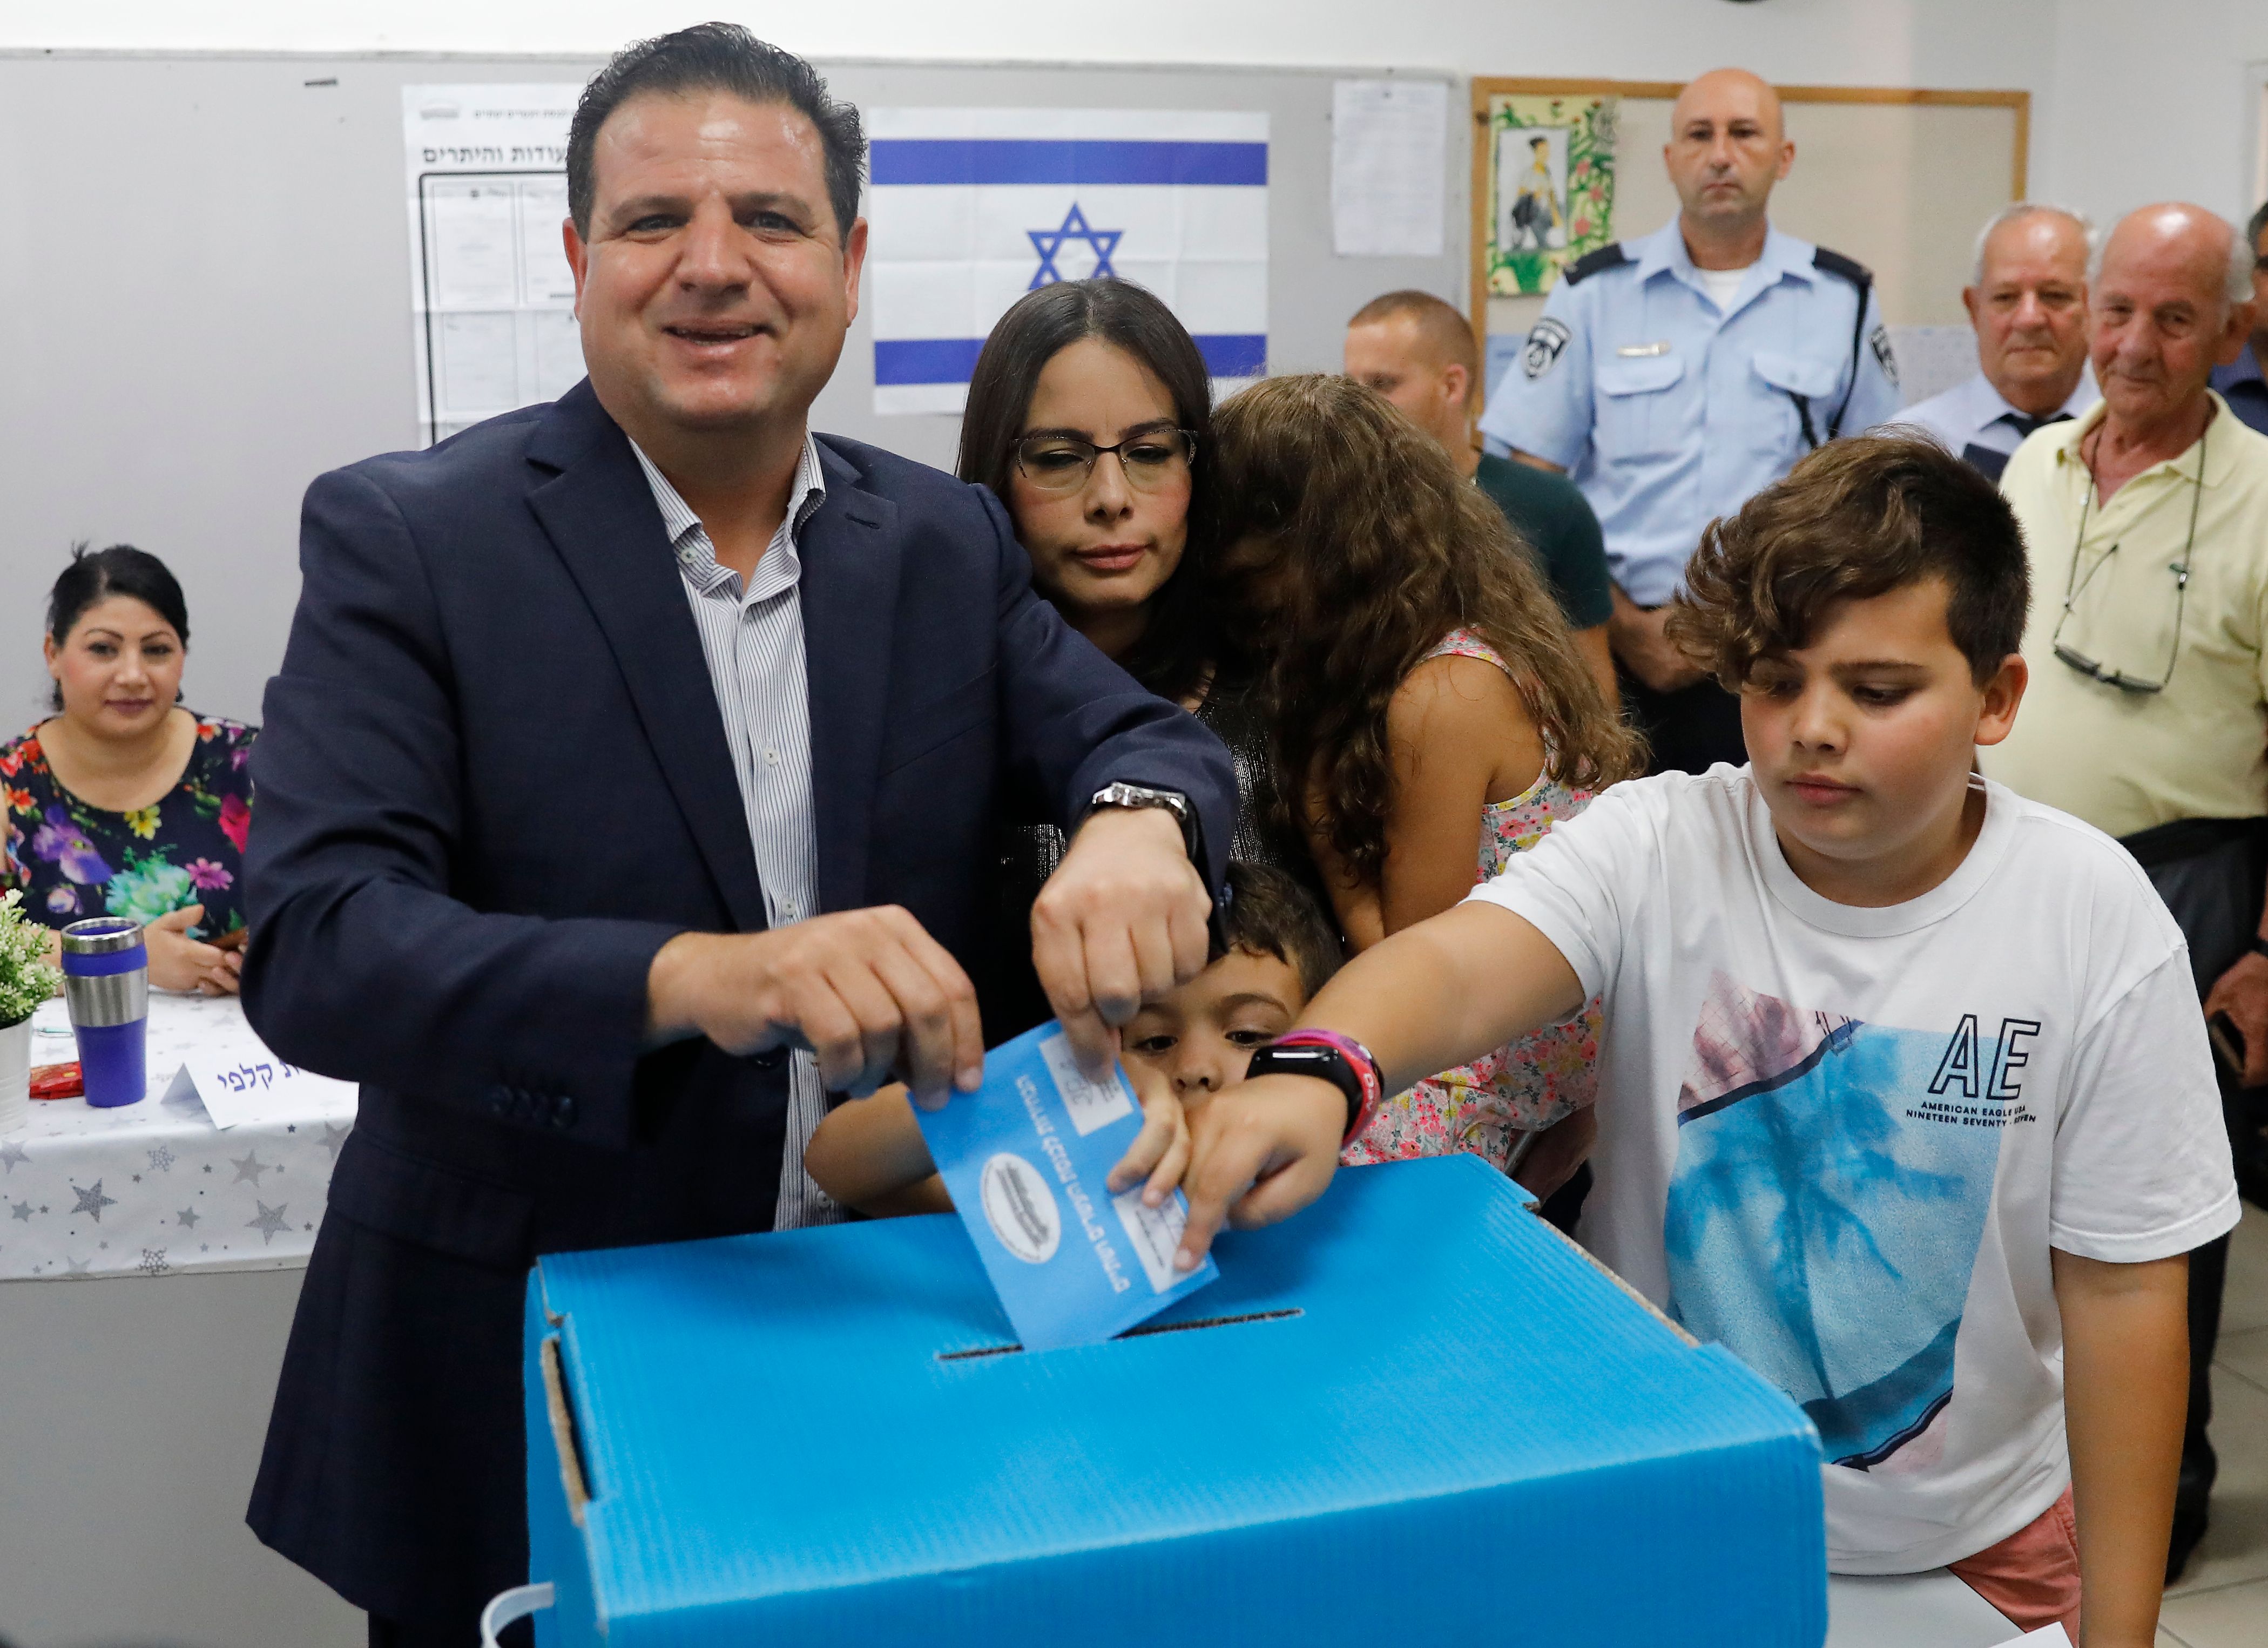 Comment expliquer l’augmentation du vote juif pour la Liste unie (communistes et partis arabes) ?